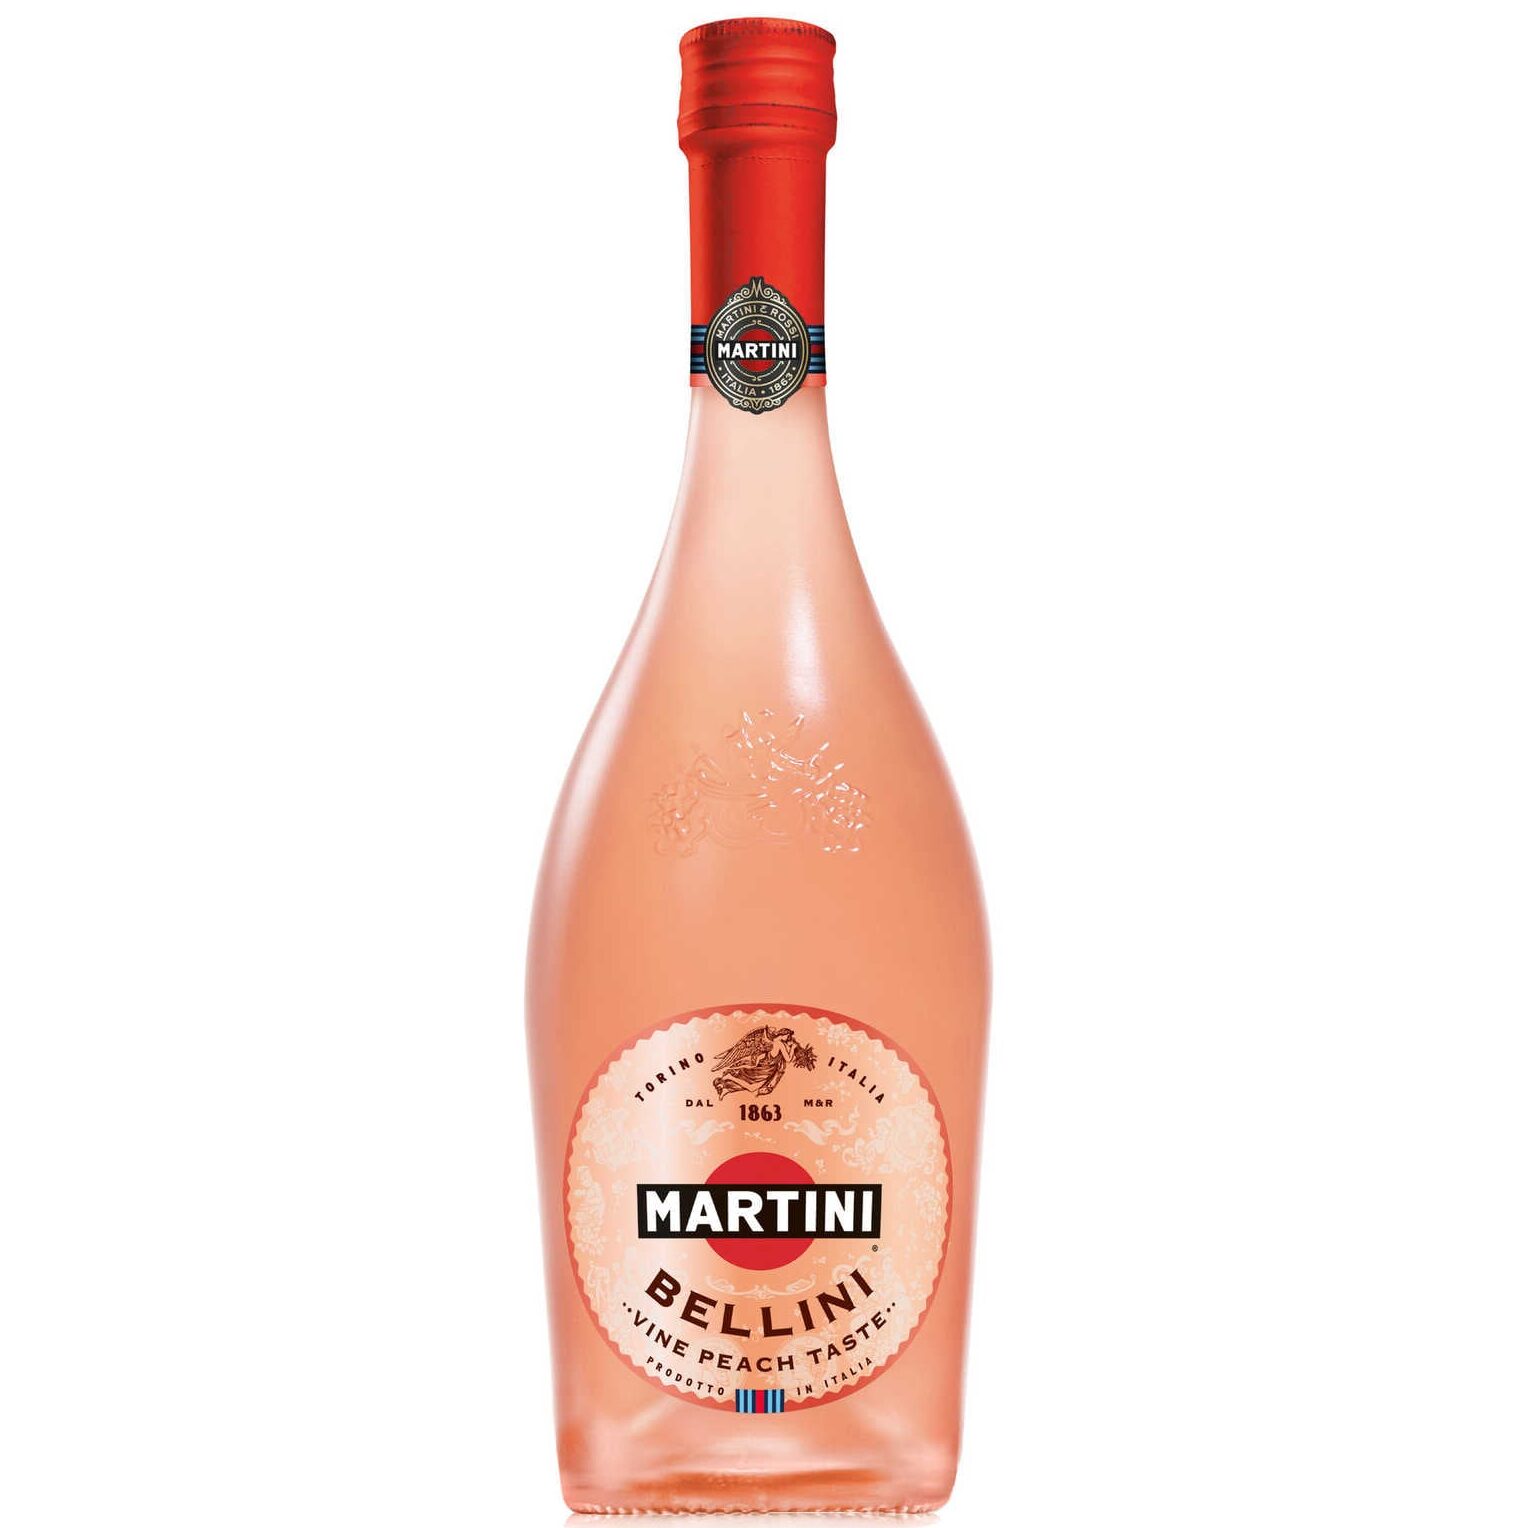 Martini Bellini pour la Saint Valentin